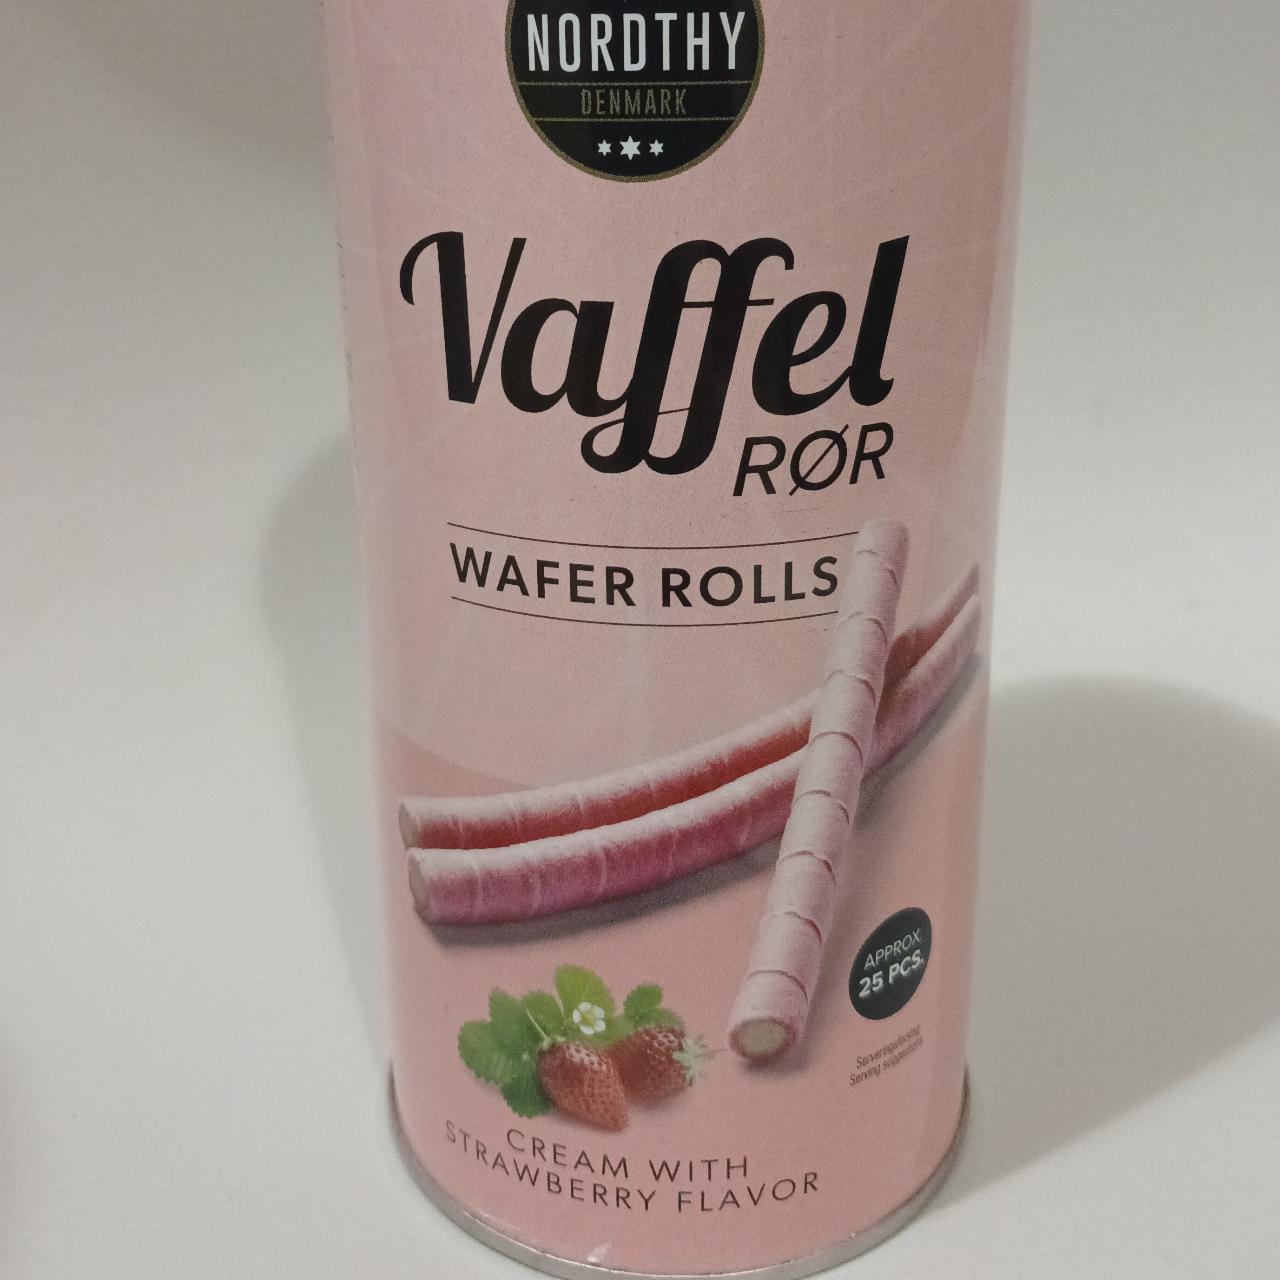 Фото - Vaffel rør wafel rolls cream with strawberry flavor Nordthy